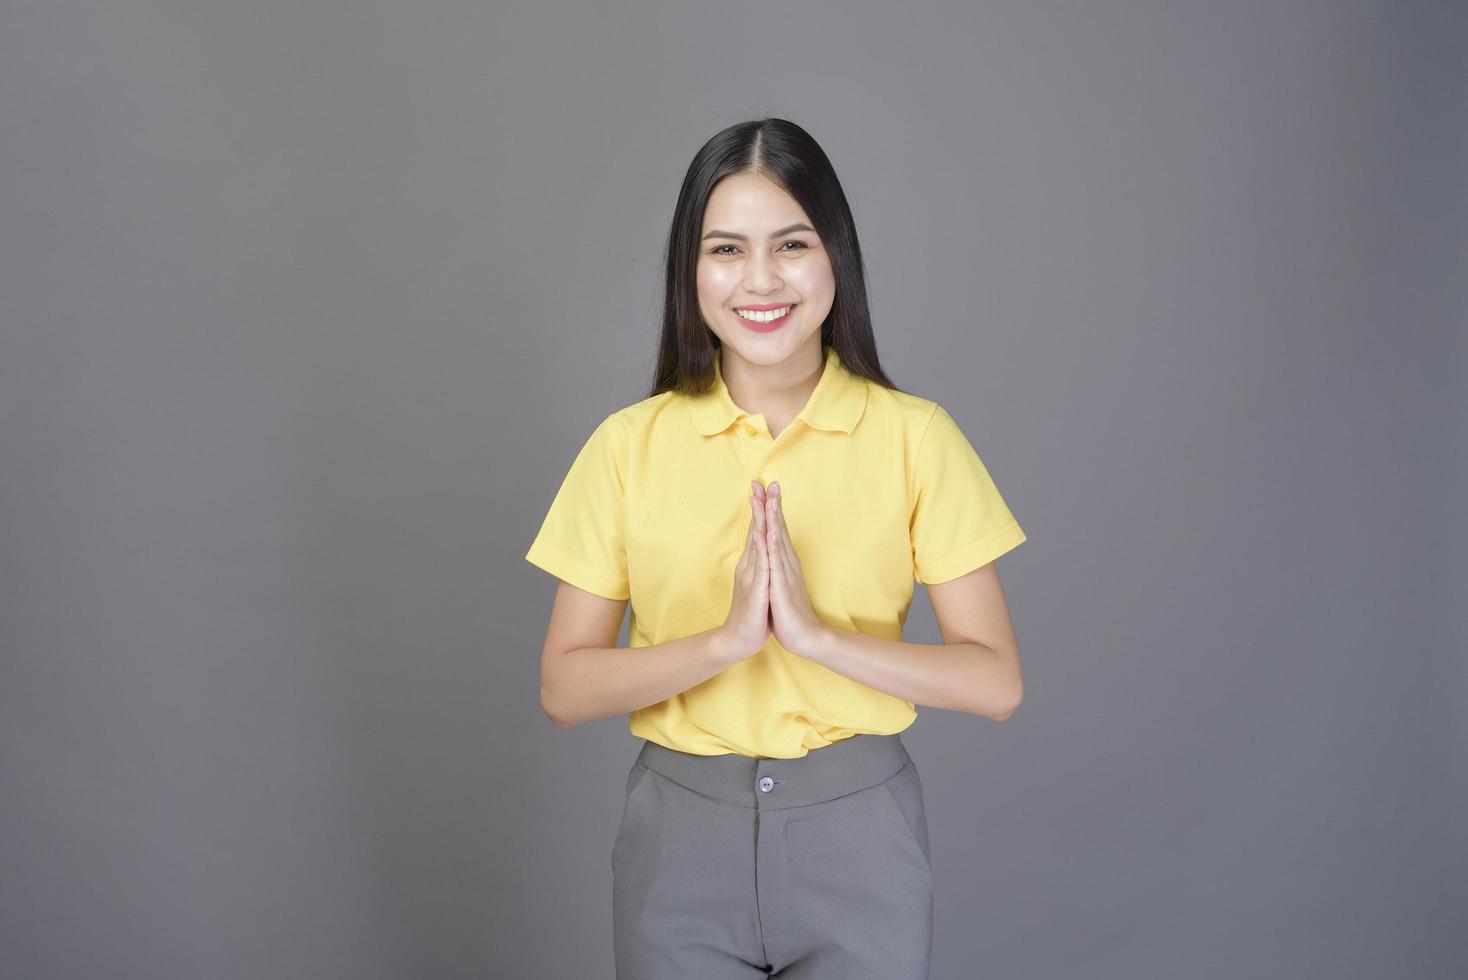 mooie zelfverzekerde vrouw begroet thai wai om respect te tonen over grijze achtergrond studio foto